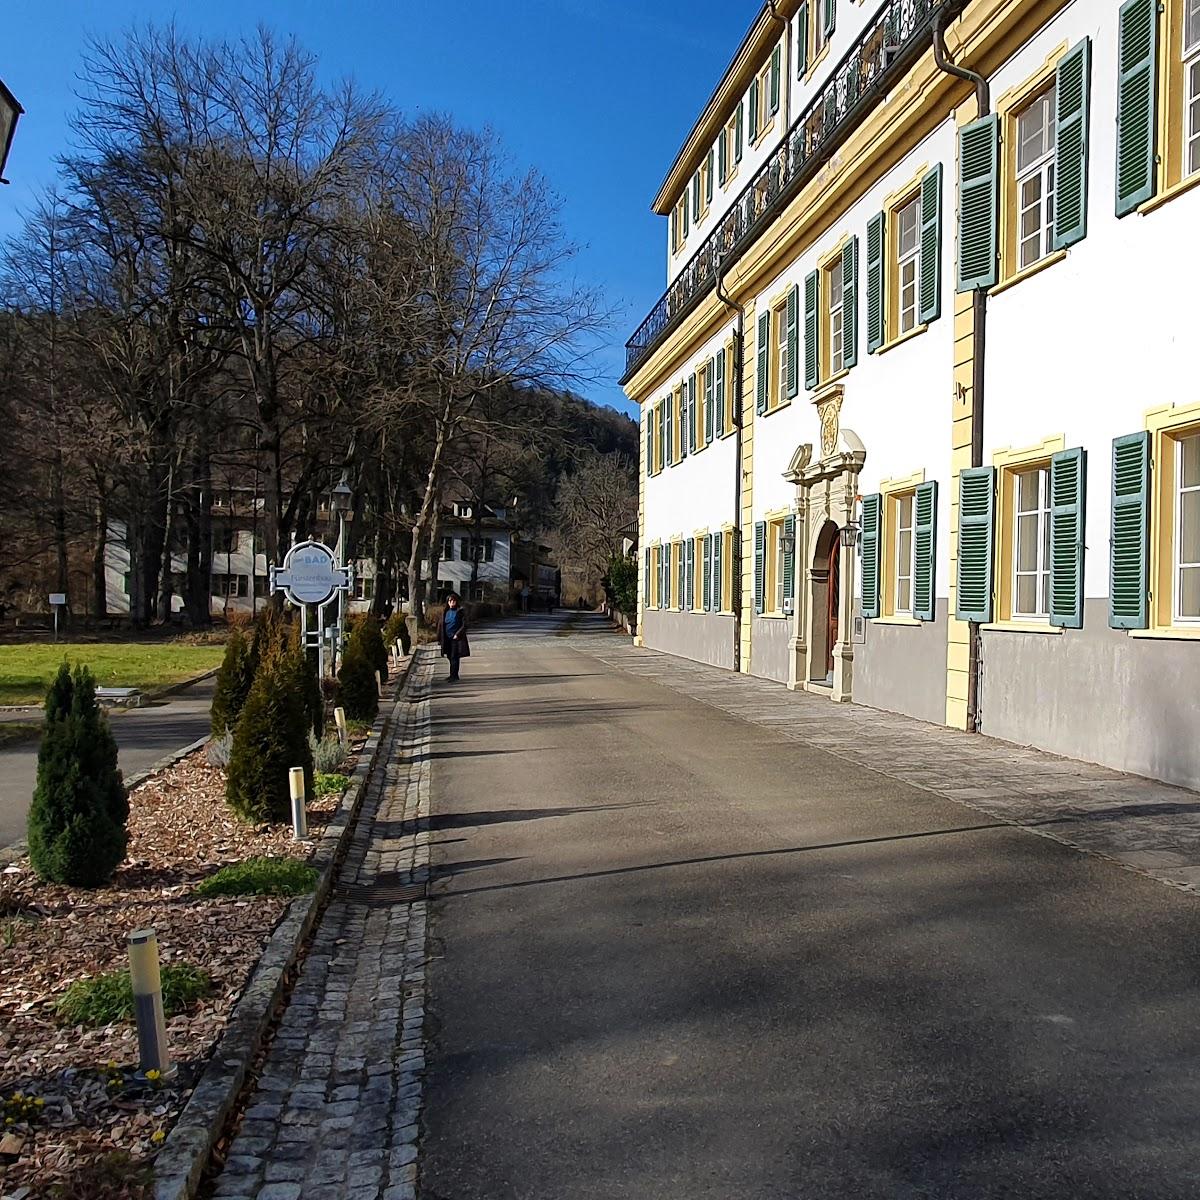 Restaurant "Hotel Fürstenhof" in Haigerloch